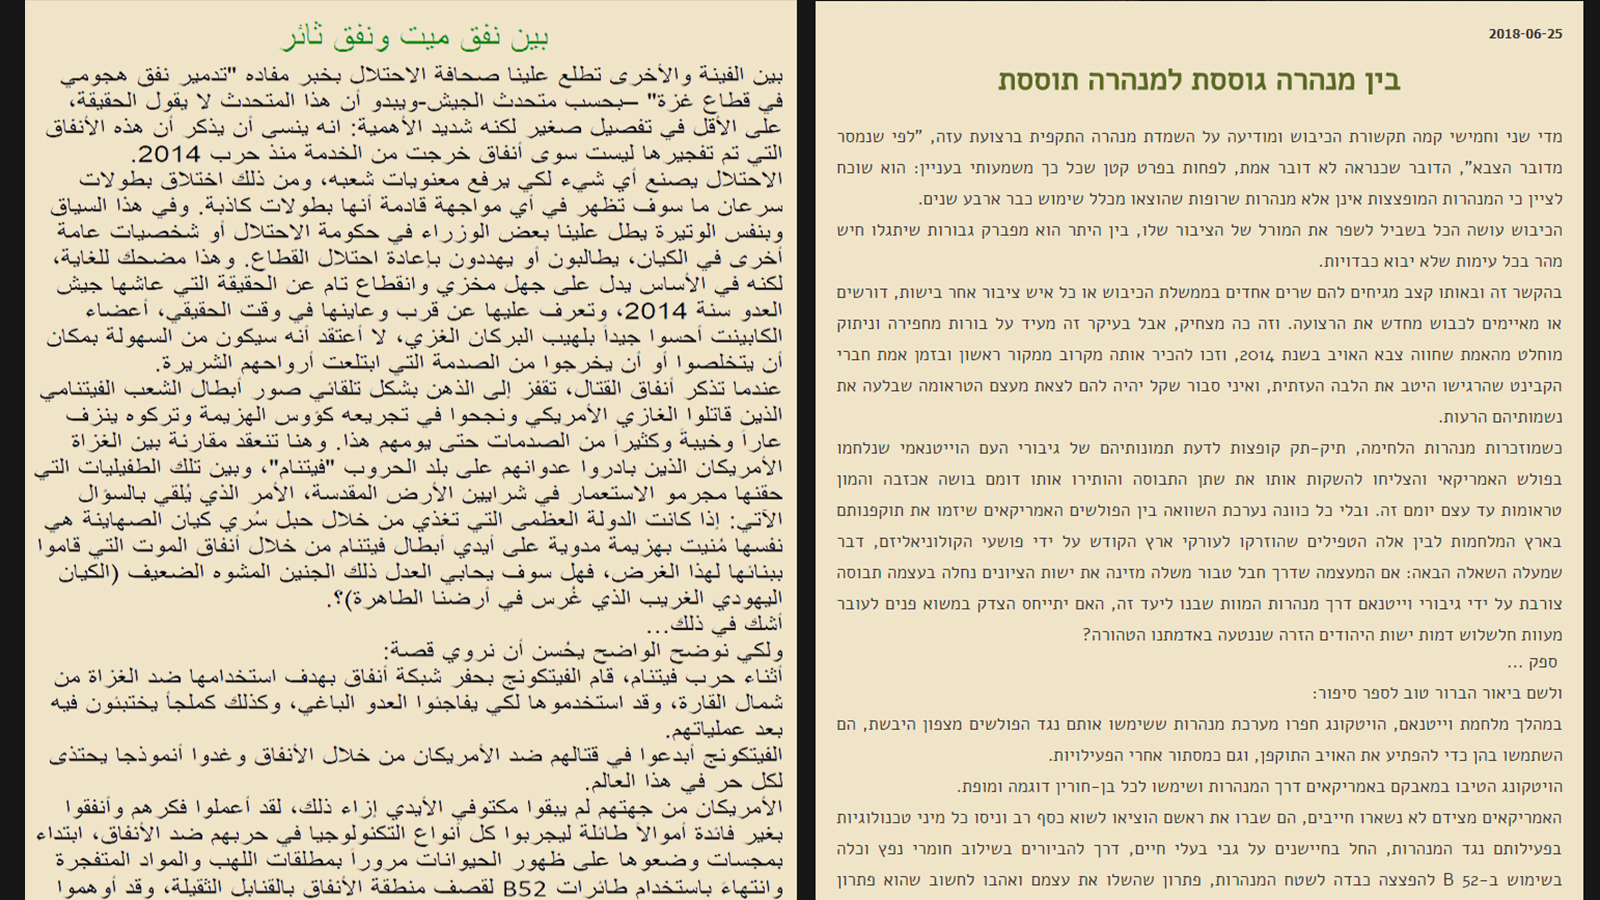 الرسالة التي وجهتها القسام للمجتمع الإسرائيلي بالعبرية مع ترجمتها للعربية (الجزيرة)